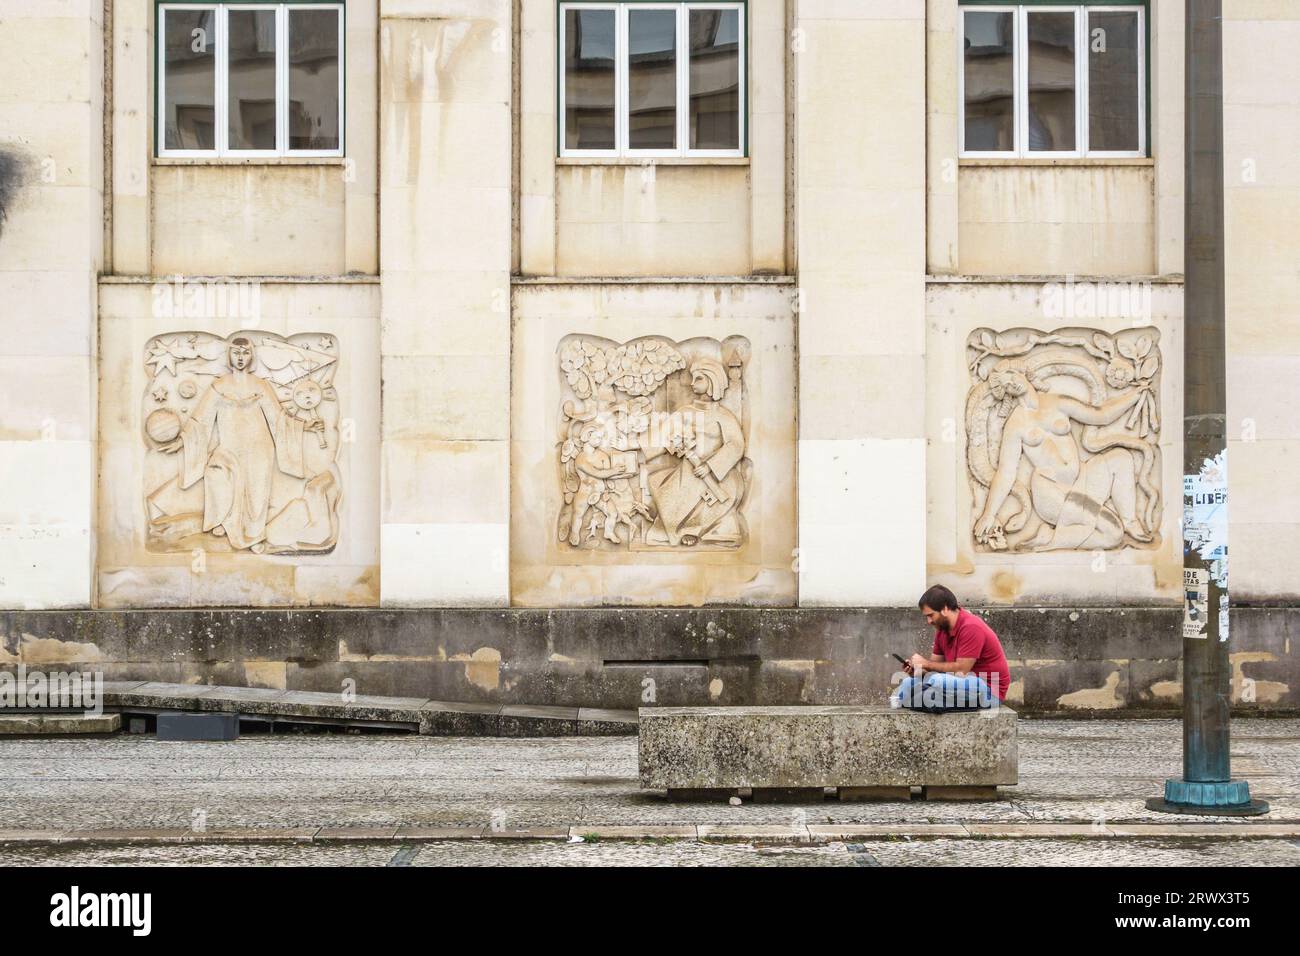 Sculptures en bas-relief représentant la science et l'éducation sur la façade de la Biblioteca Geral (Bibliothèque générale) de l'Université de Coimbra, Portugal Banque D'Images